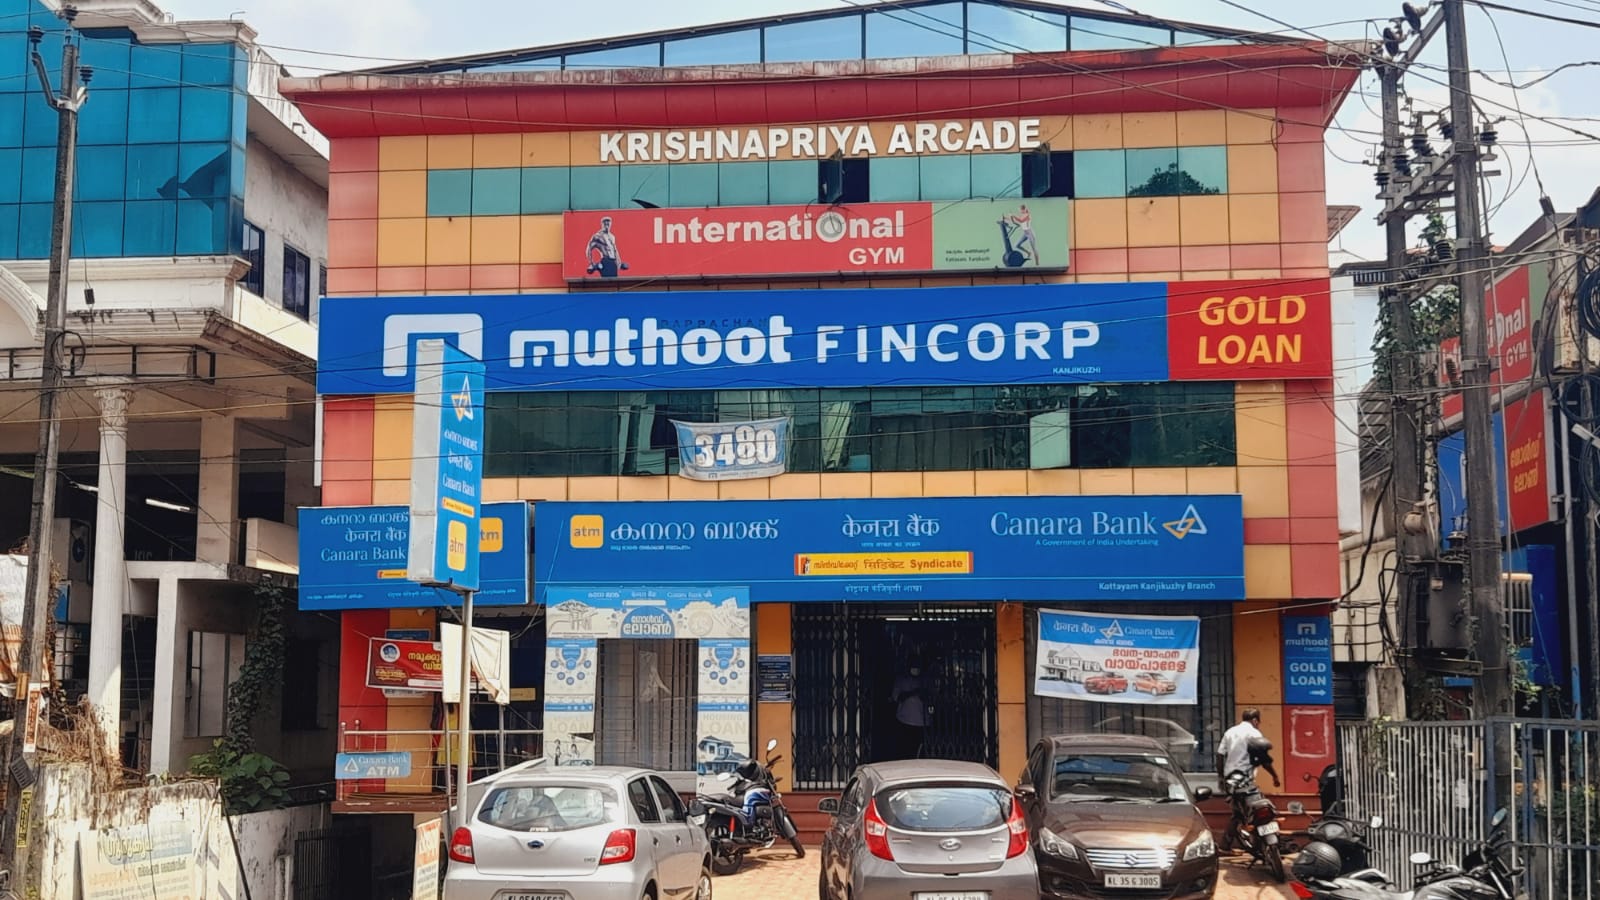 Muthoot Fincorp Gold Loan Services in Kanjikuzhy, Kottayam, Kerala